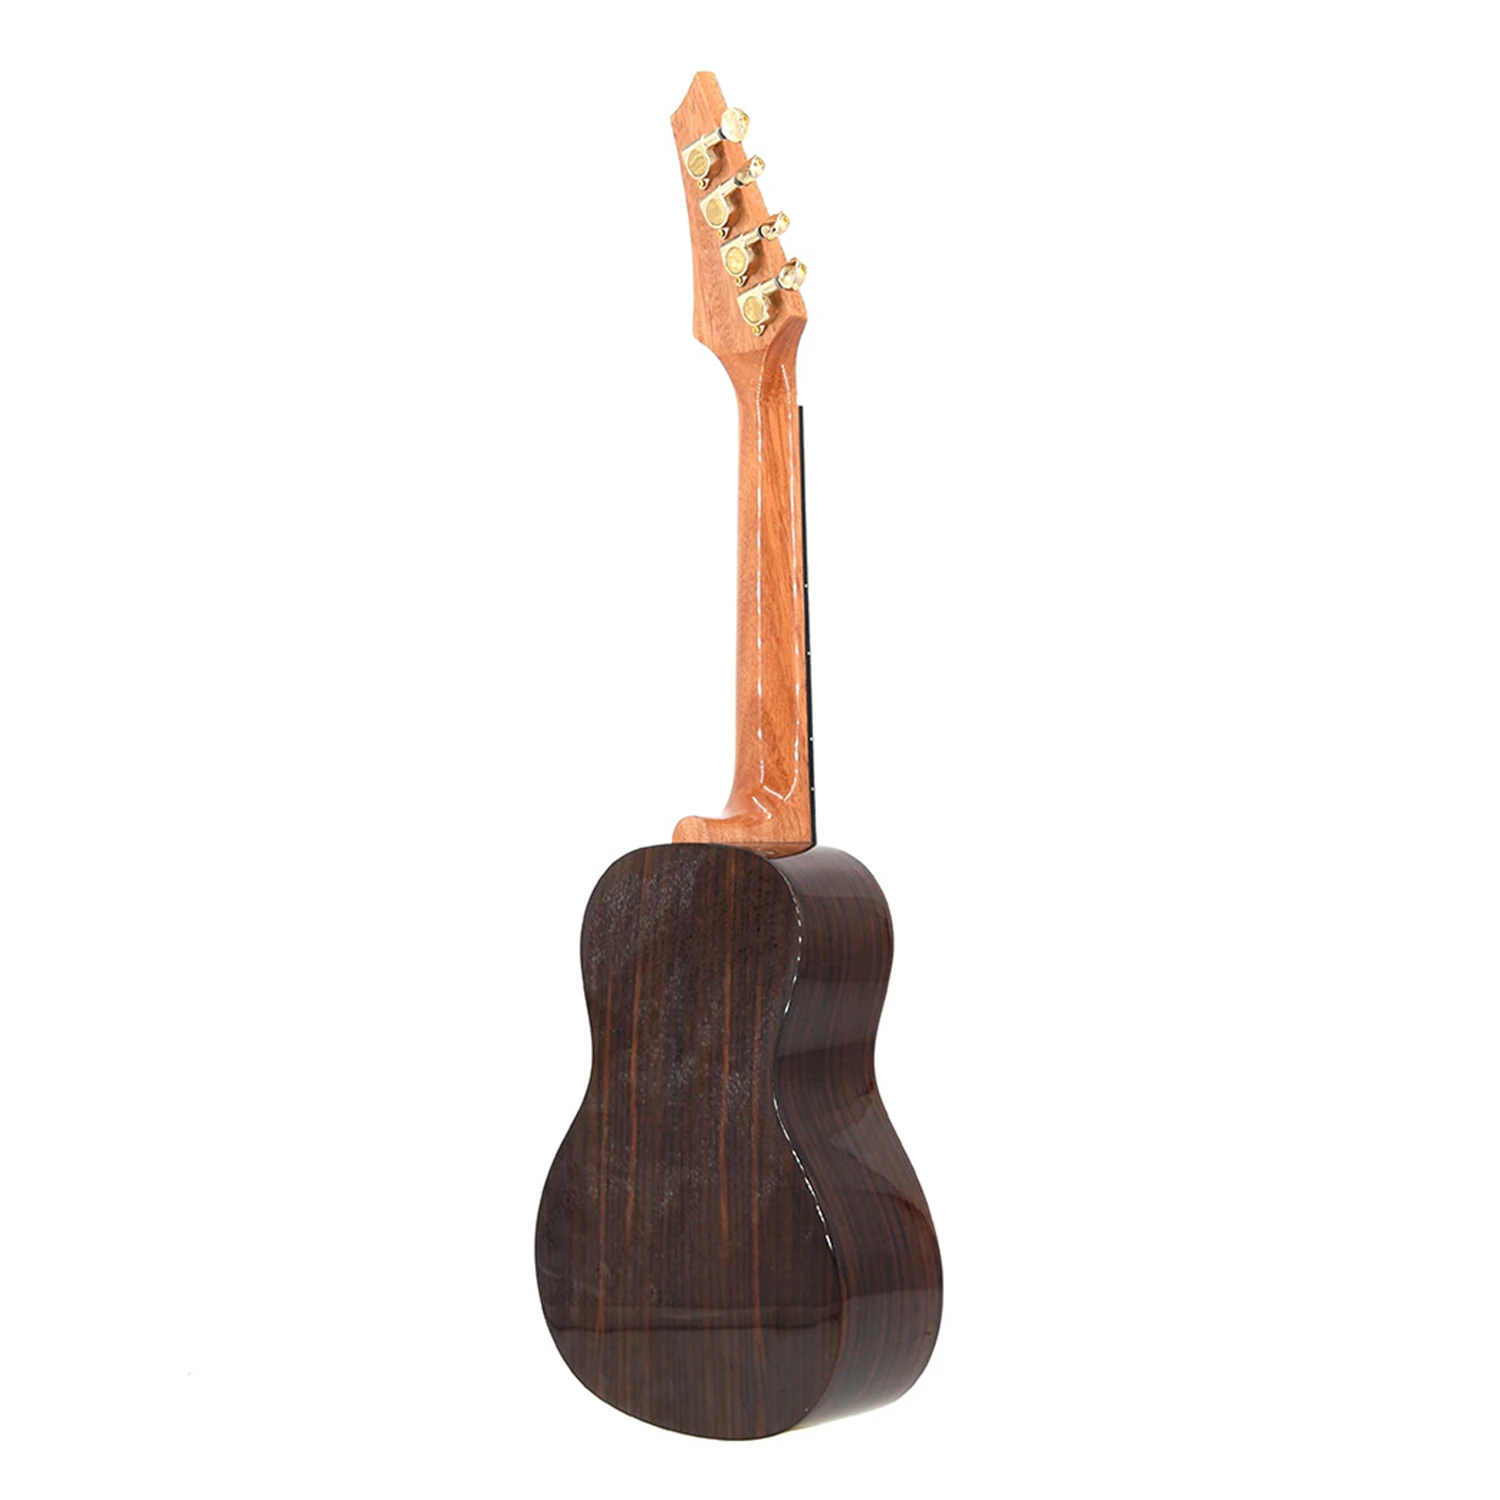 2" тенор палисандр ель твердая древесина 4 струны Гавайские гитары укулеле Уке Гавайи мини маленький guitalele туристическая Акустическая гитара Ukelele концертная